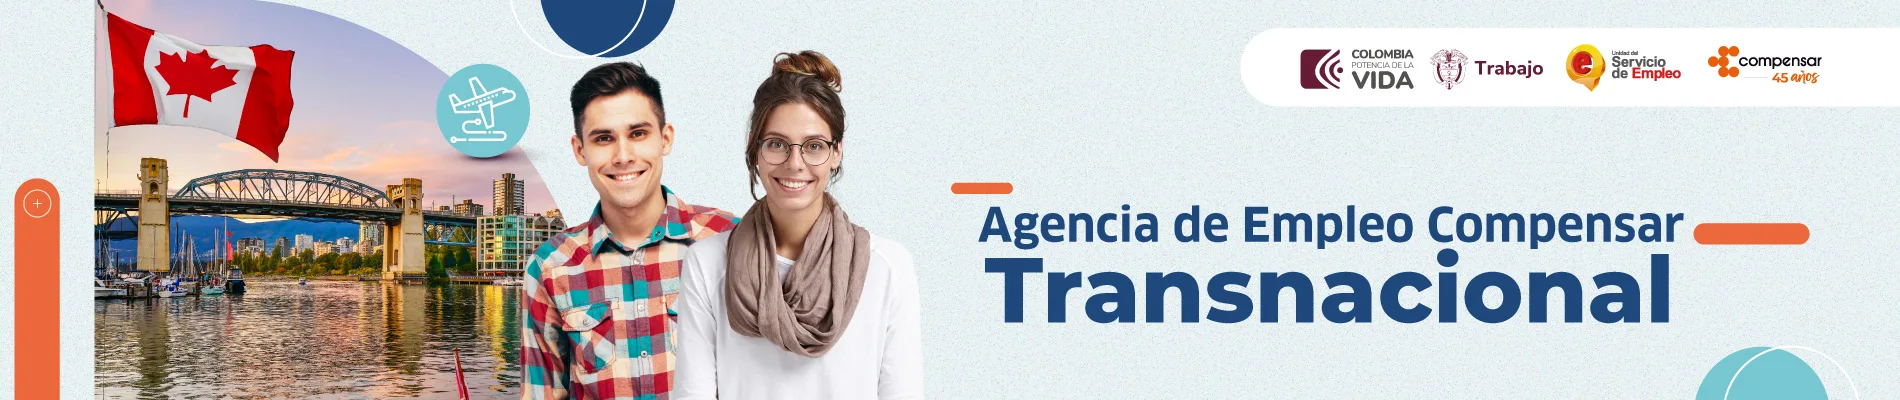 Banner agencia trasnacional